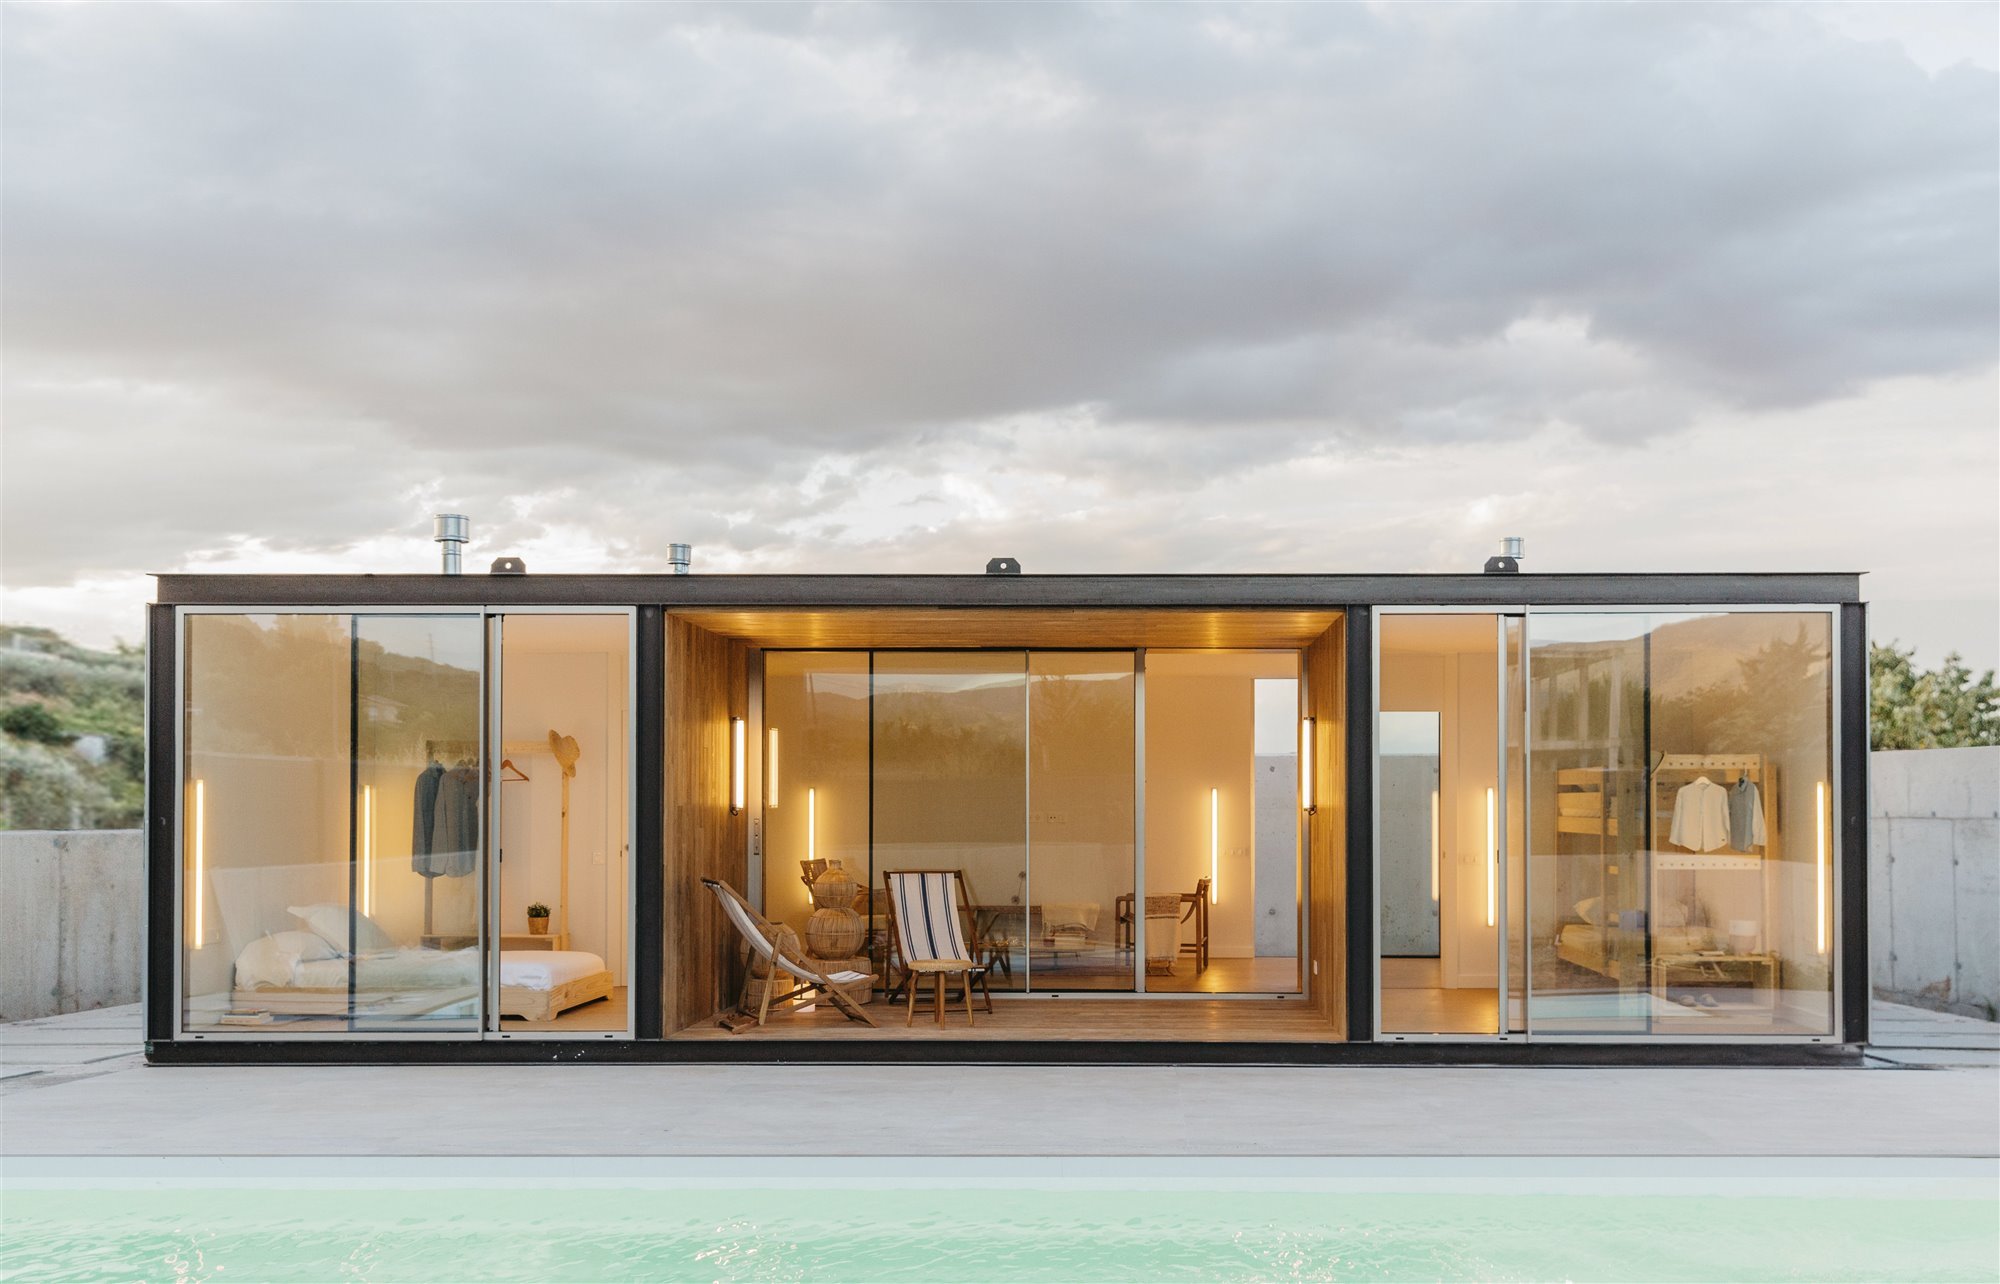 Una casa modular de 60 metros en La Rioja construida en 60 días